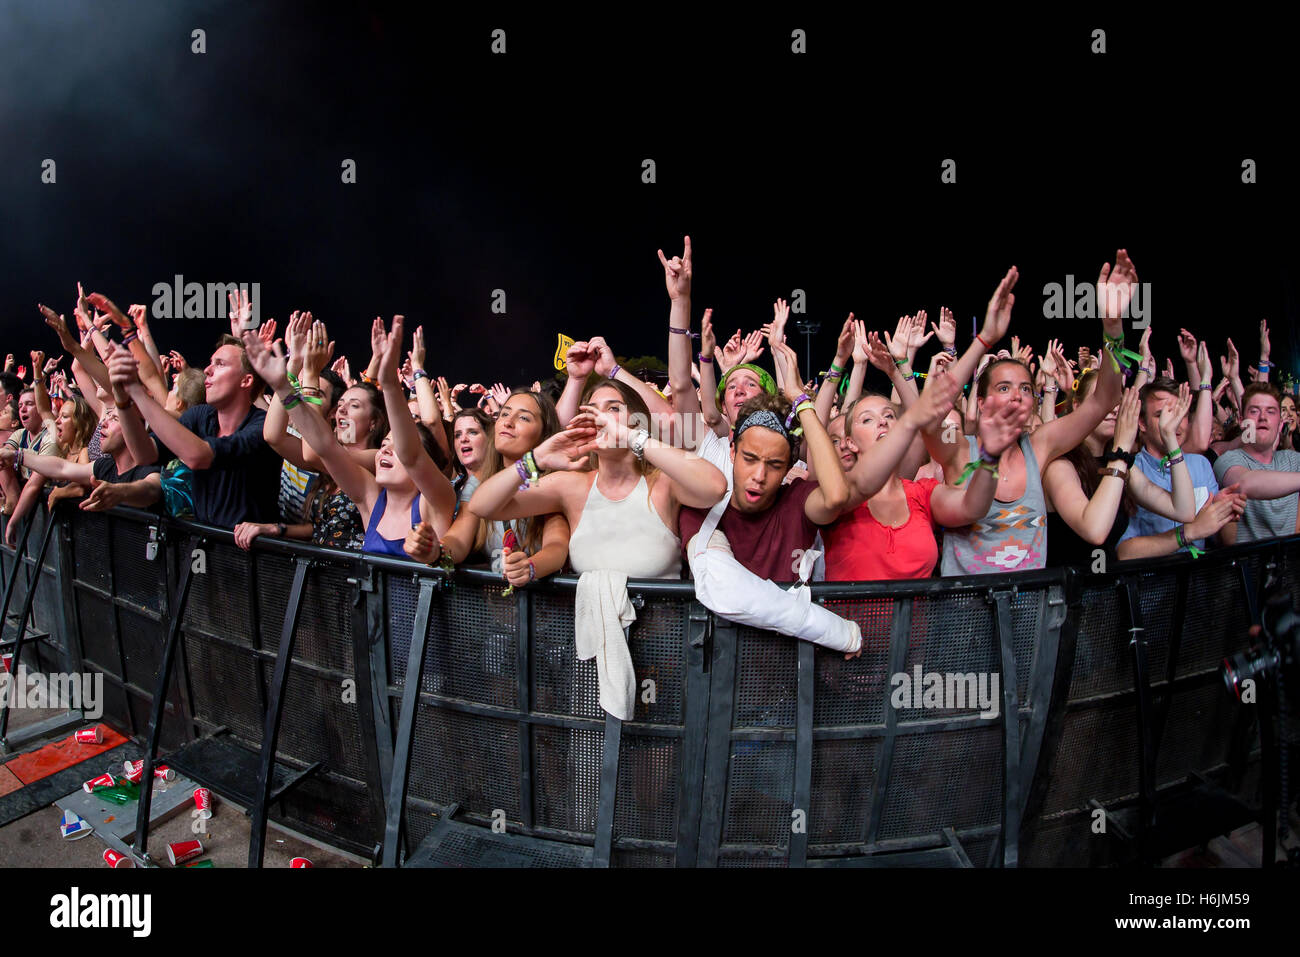 BENICASSIM, Spanien - 18 JUL: Menge in einem Konzert am FIB Festival am 18. Juli 2015 in Benicassim, Spanien. Stockfoto